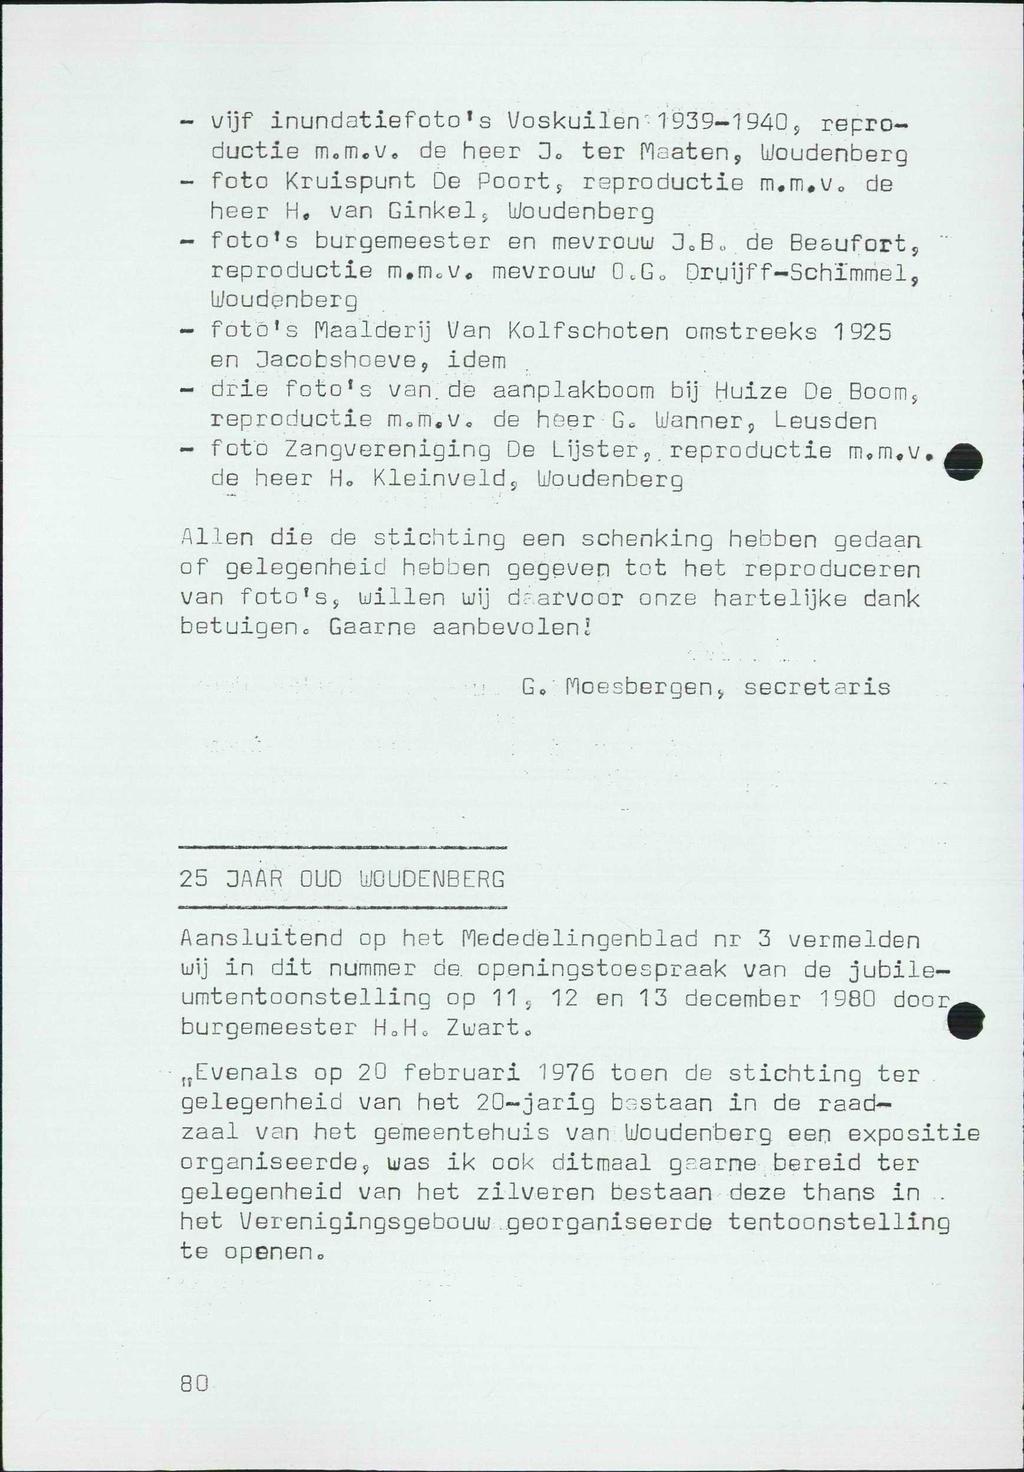 - vijf inundatiefoto's Voskuilen 1939-1940, reproductie m.m.v. de heer Do ter Maaten, Woudenberg - foto Kruispunt De Poort s reproductie m.m.v,, de heer H.